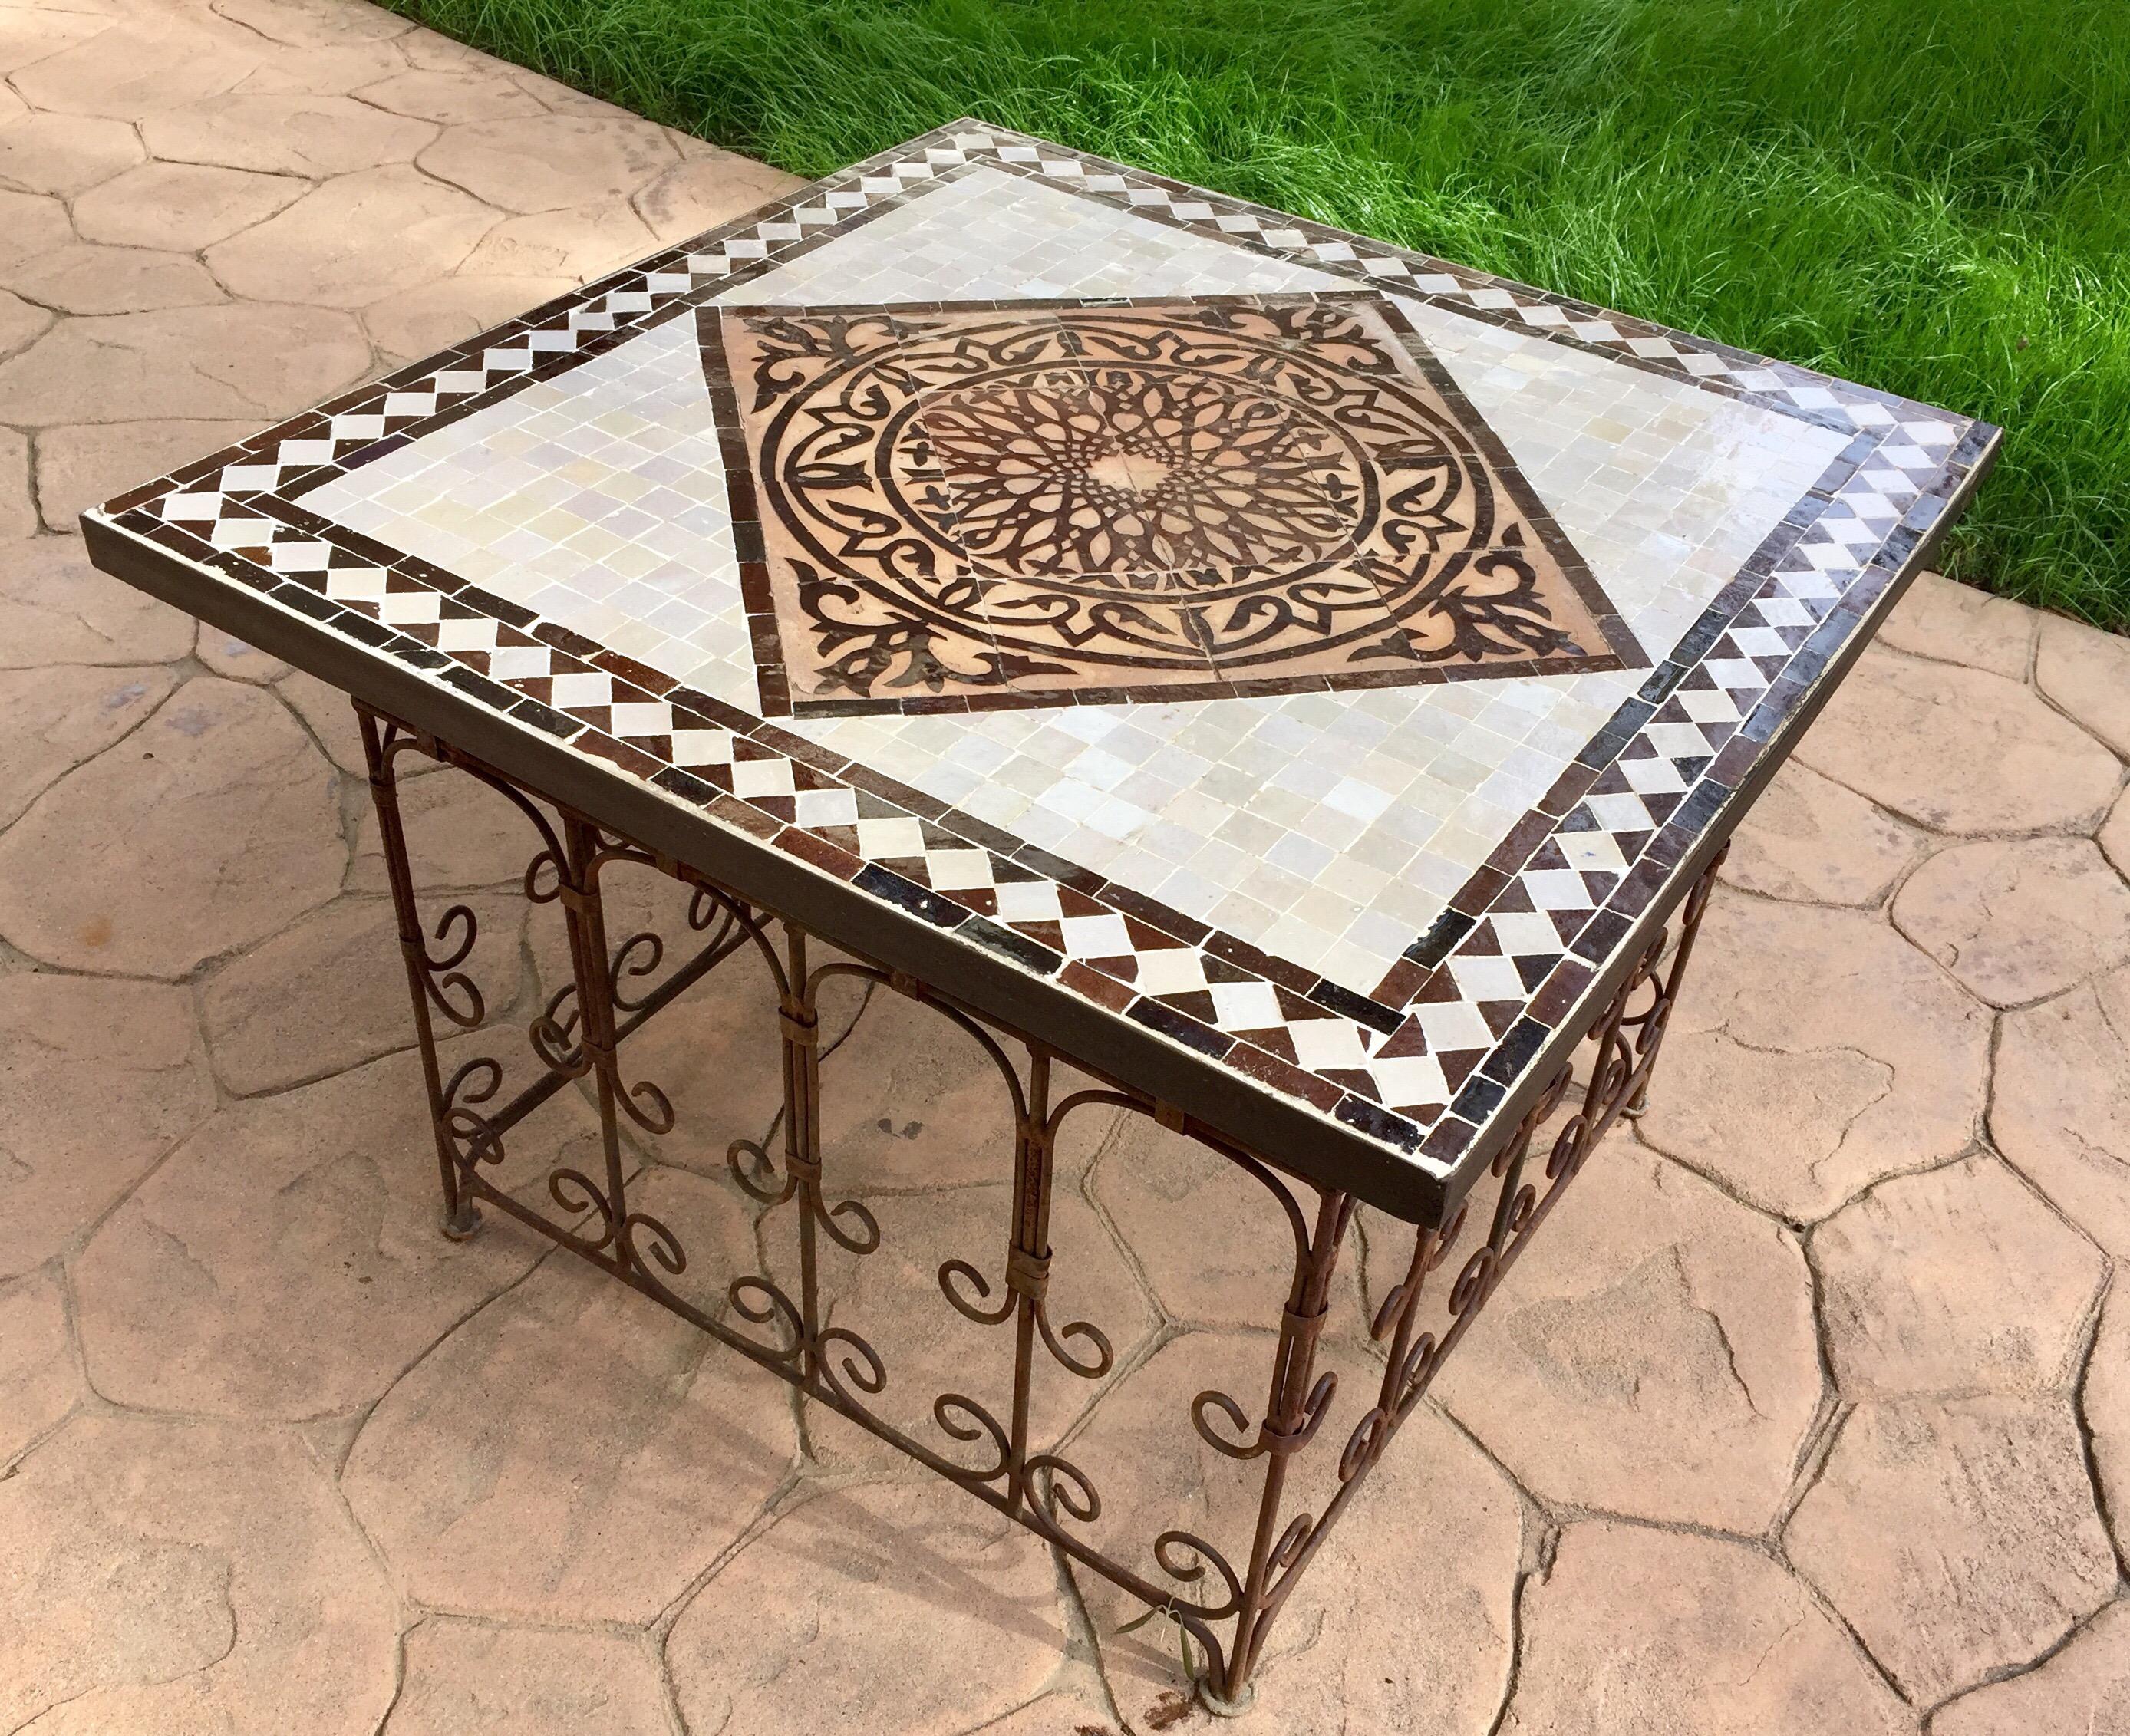 Superbe table basse ou table d'appoint en mosaïque marocaine, délicatement fabriquée à la main à Fès, avec un design géométrique maure traditionnel ciselé à la main dans des tons bruns, arrière et blanc cassé.
La table en zellige fabriquée à la main